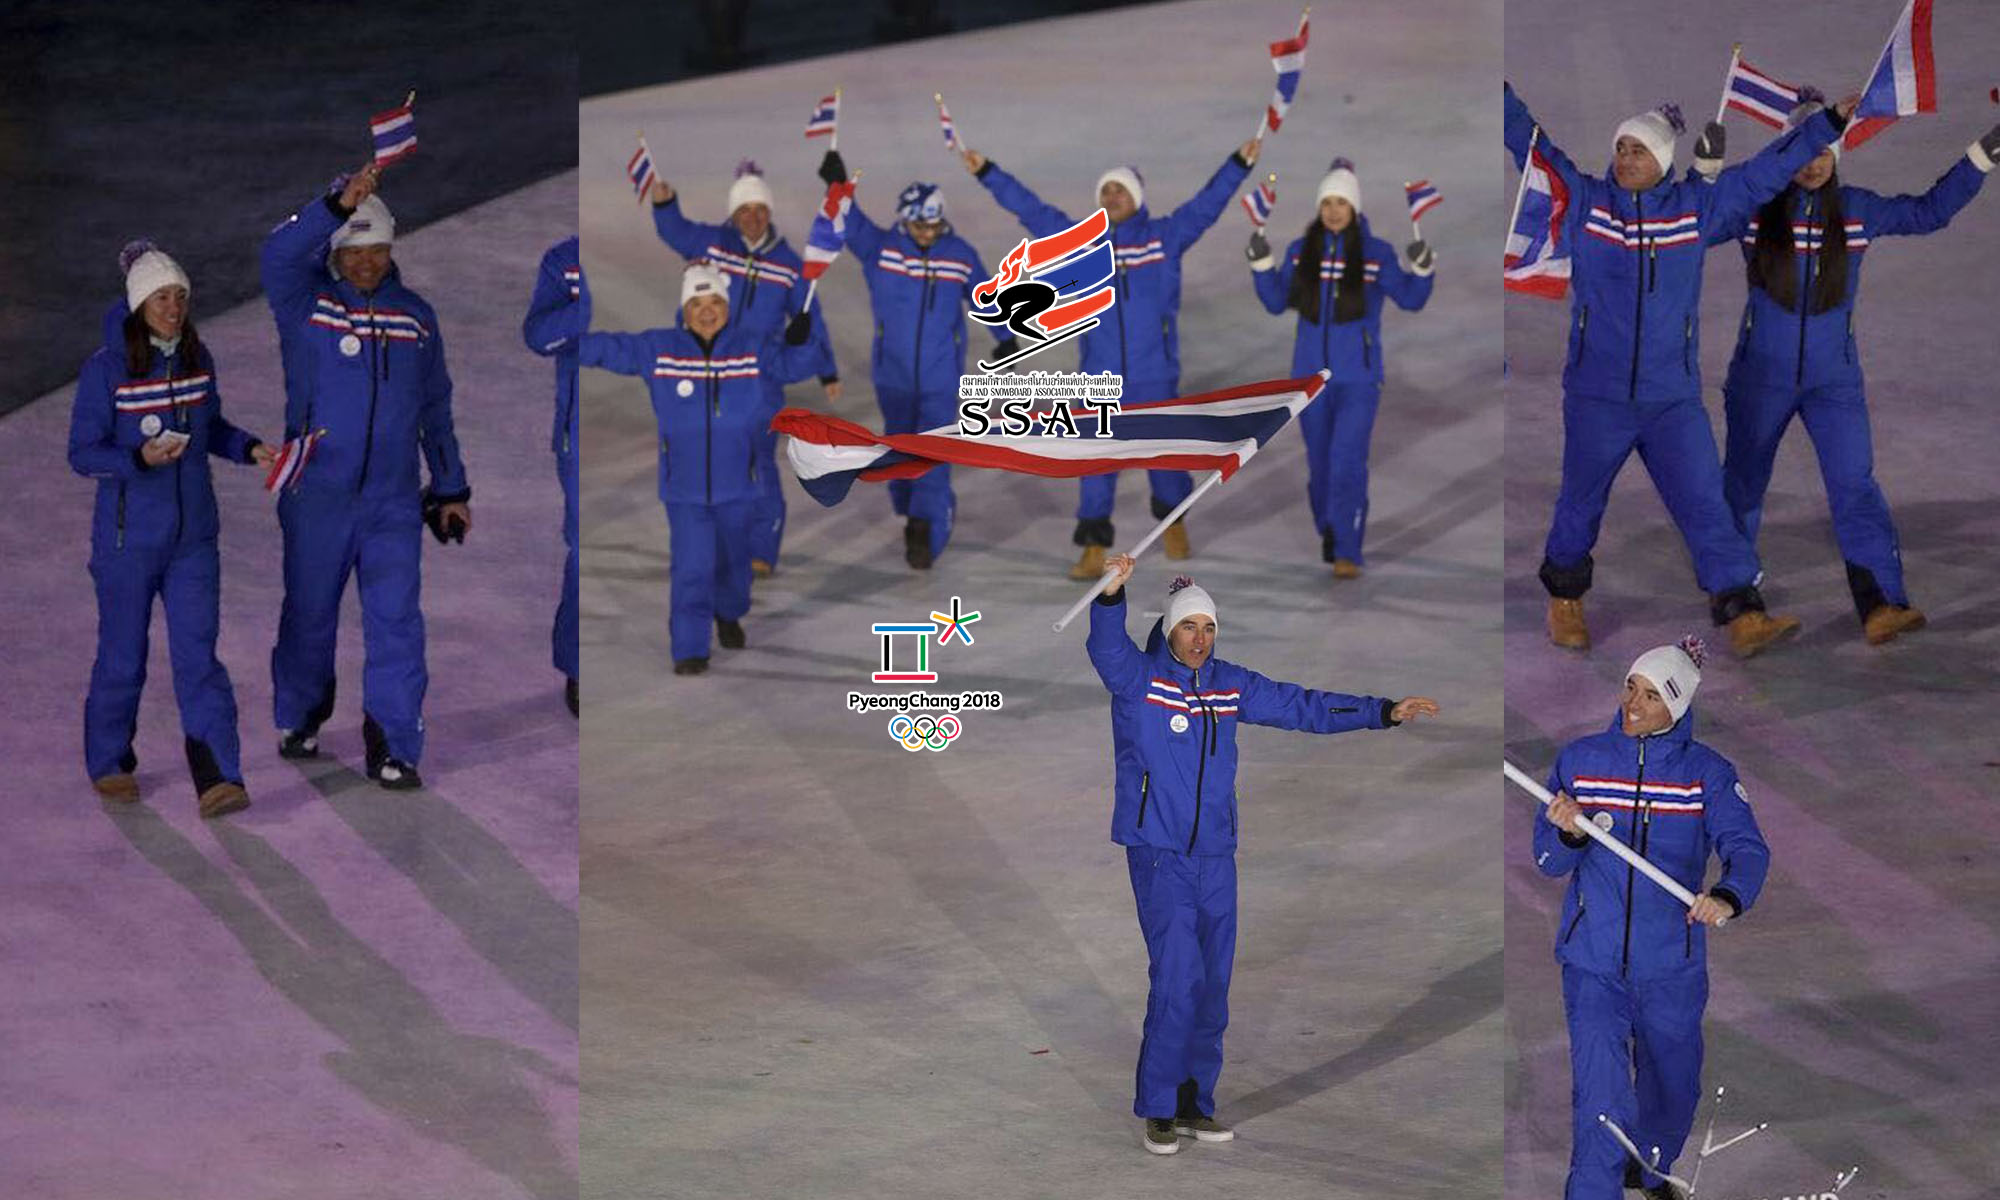 สมาคมกีฬาสกีและสโนว์บอร์ดแห่งประเทศไทย